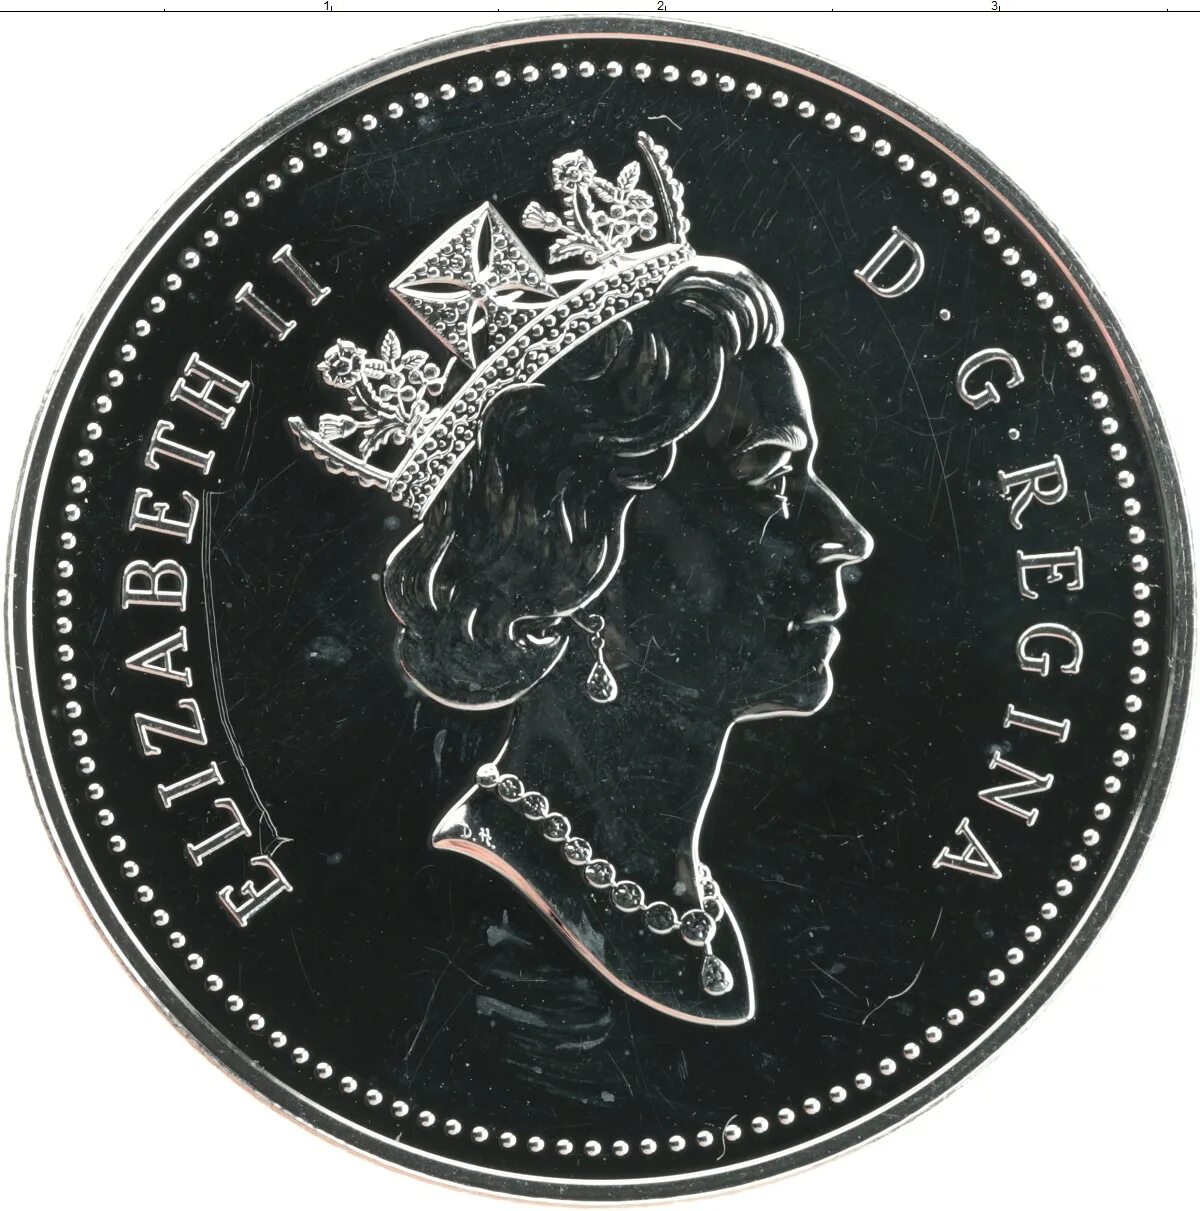 1 доллар 1995. 1 Доллар 1995 серебро. 1 Канадский доллар 1995. Монеты Канады 1995 года.